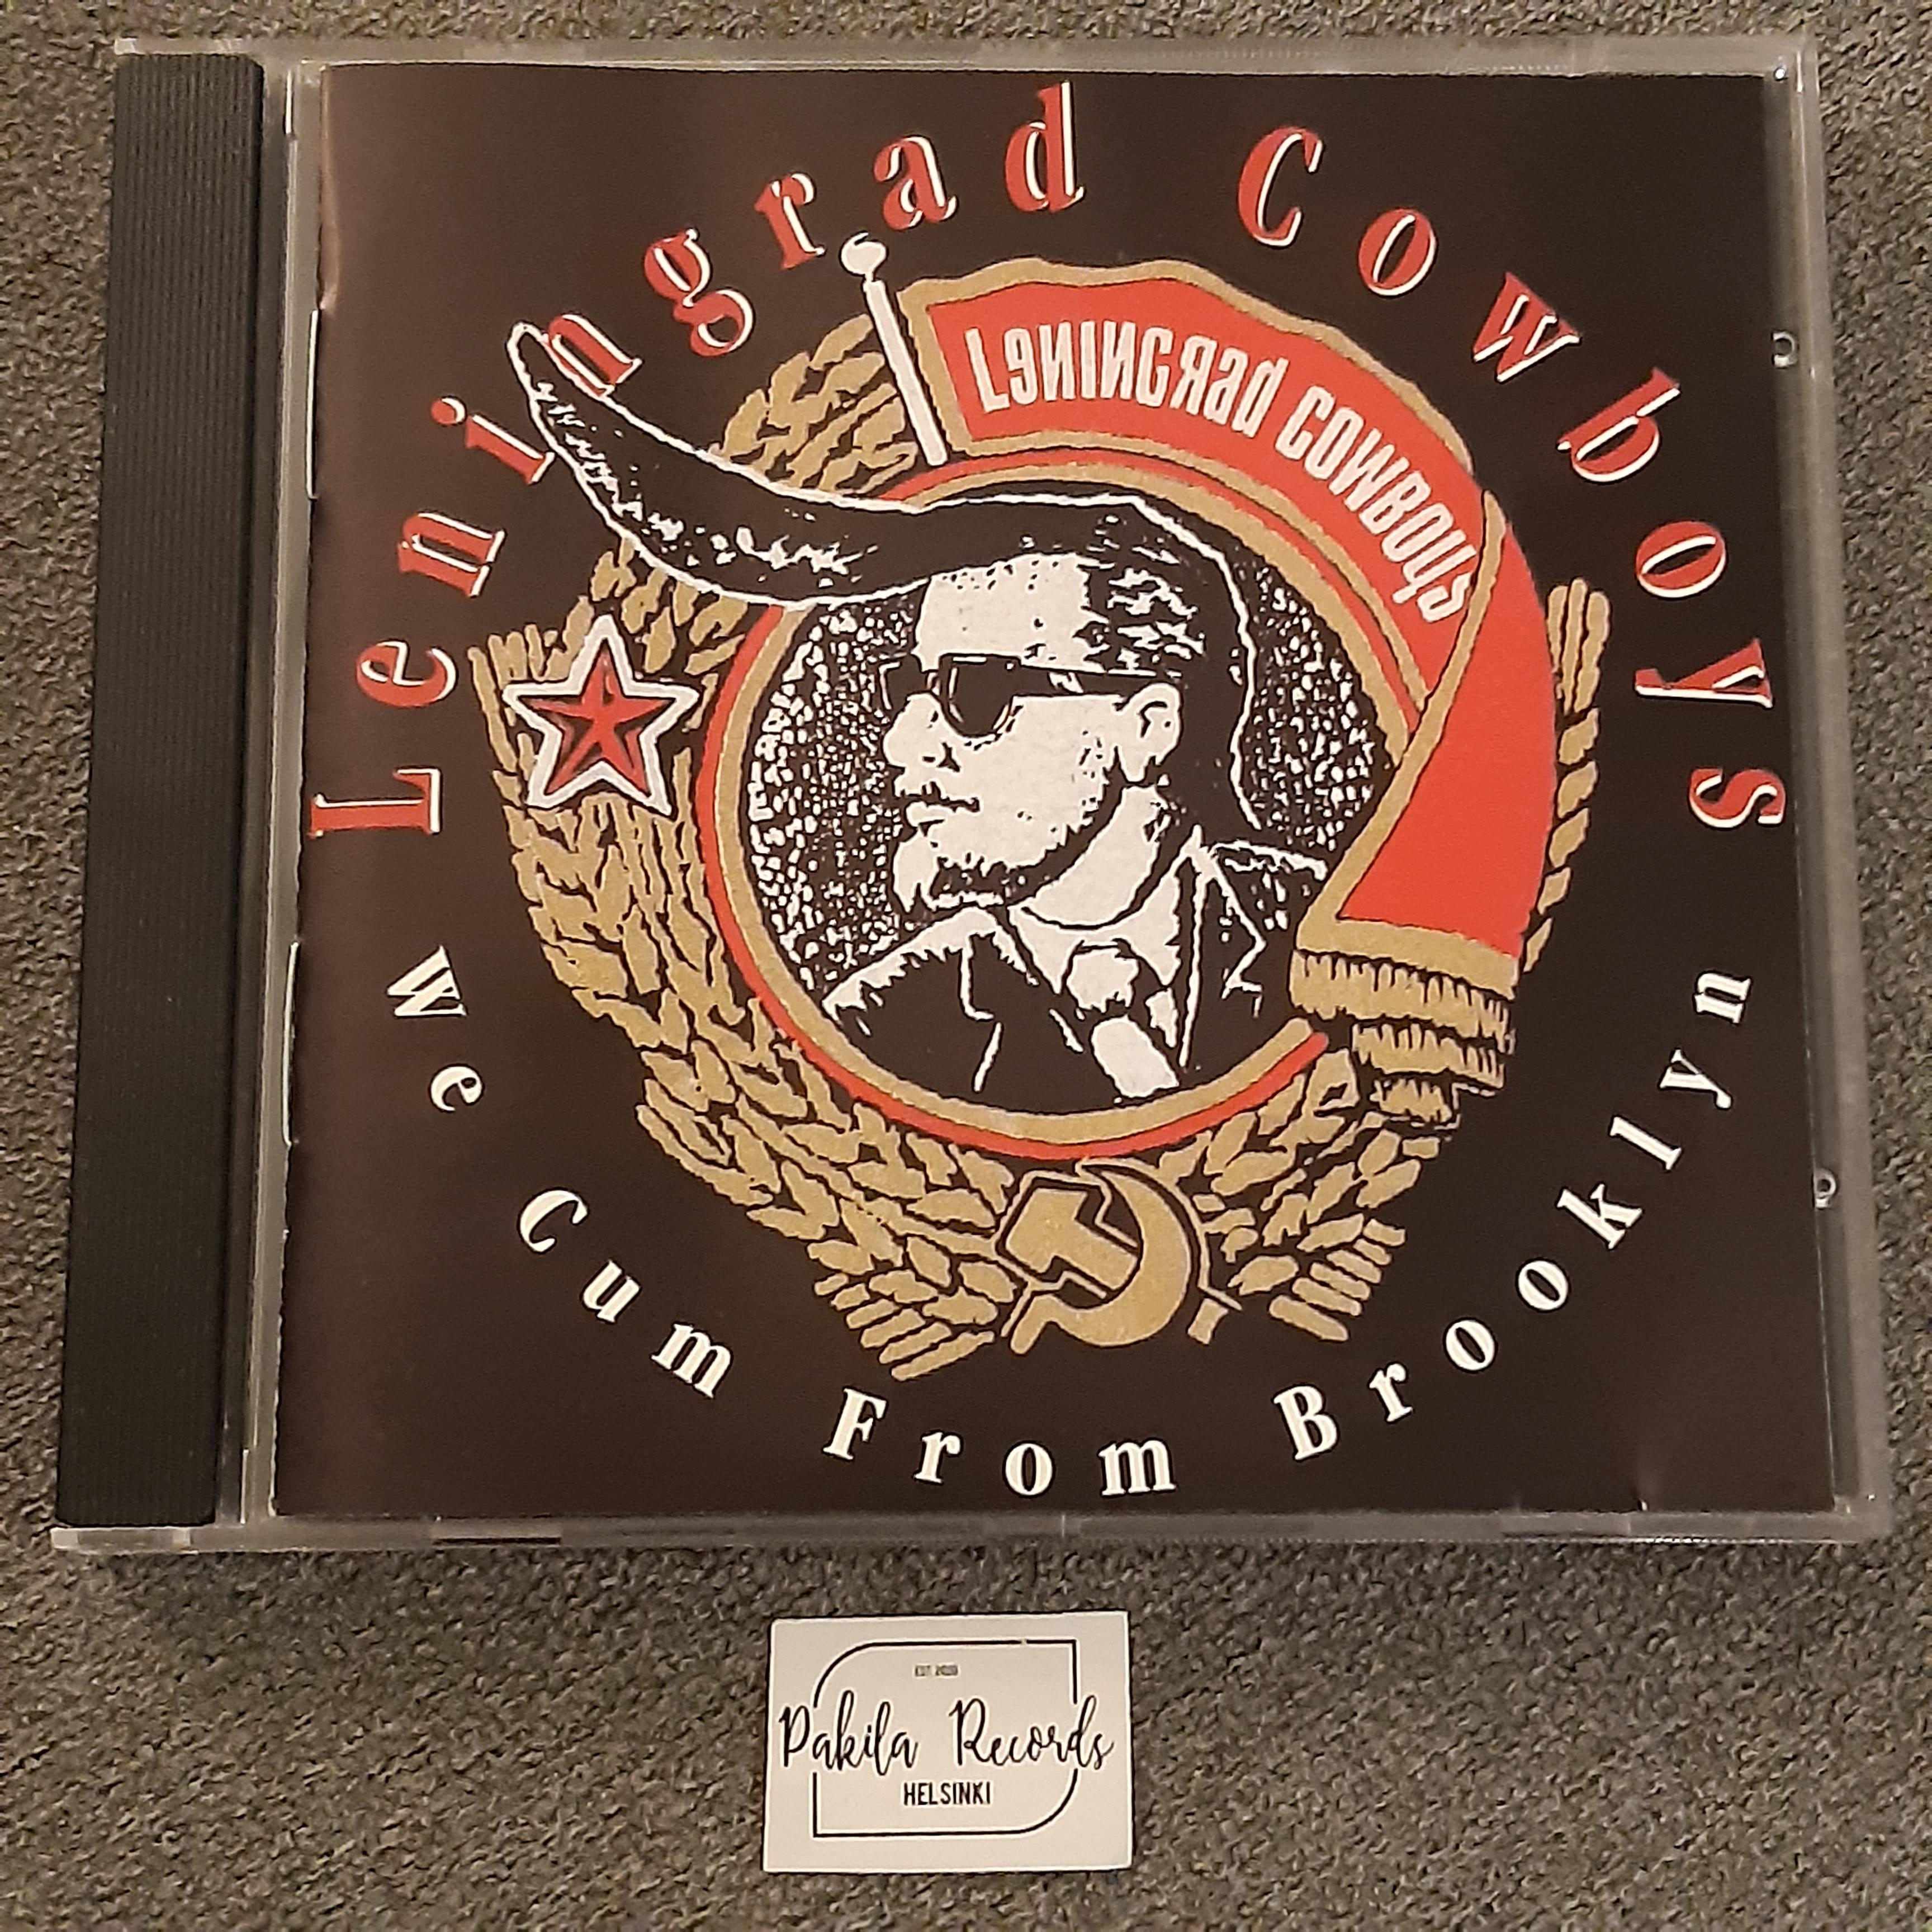 Leningrad Cowboys - We Cum From Brooklyn - CD (käytetty)